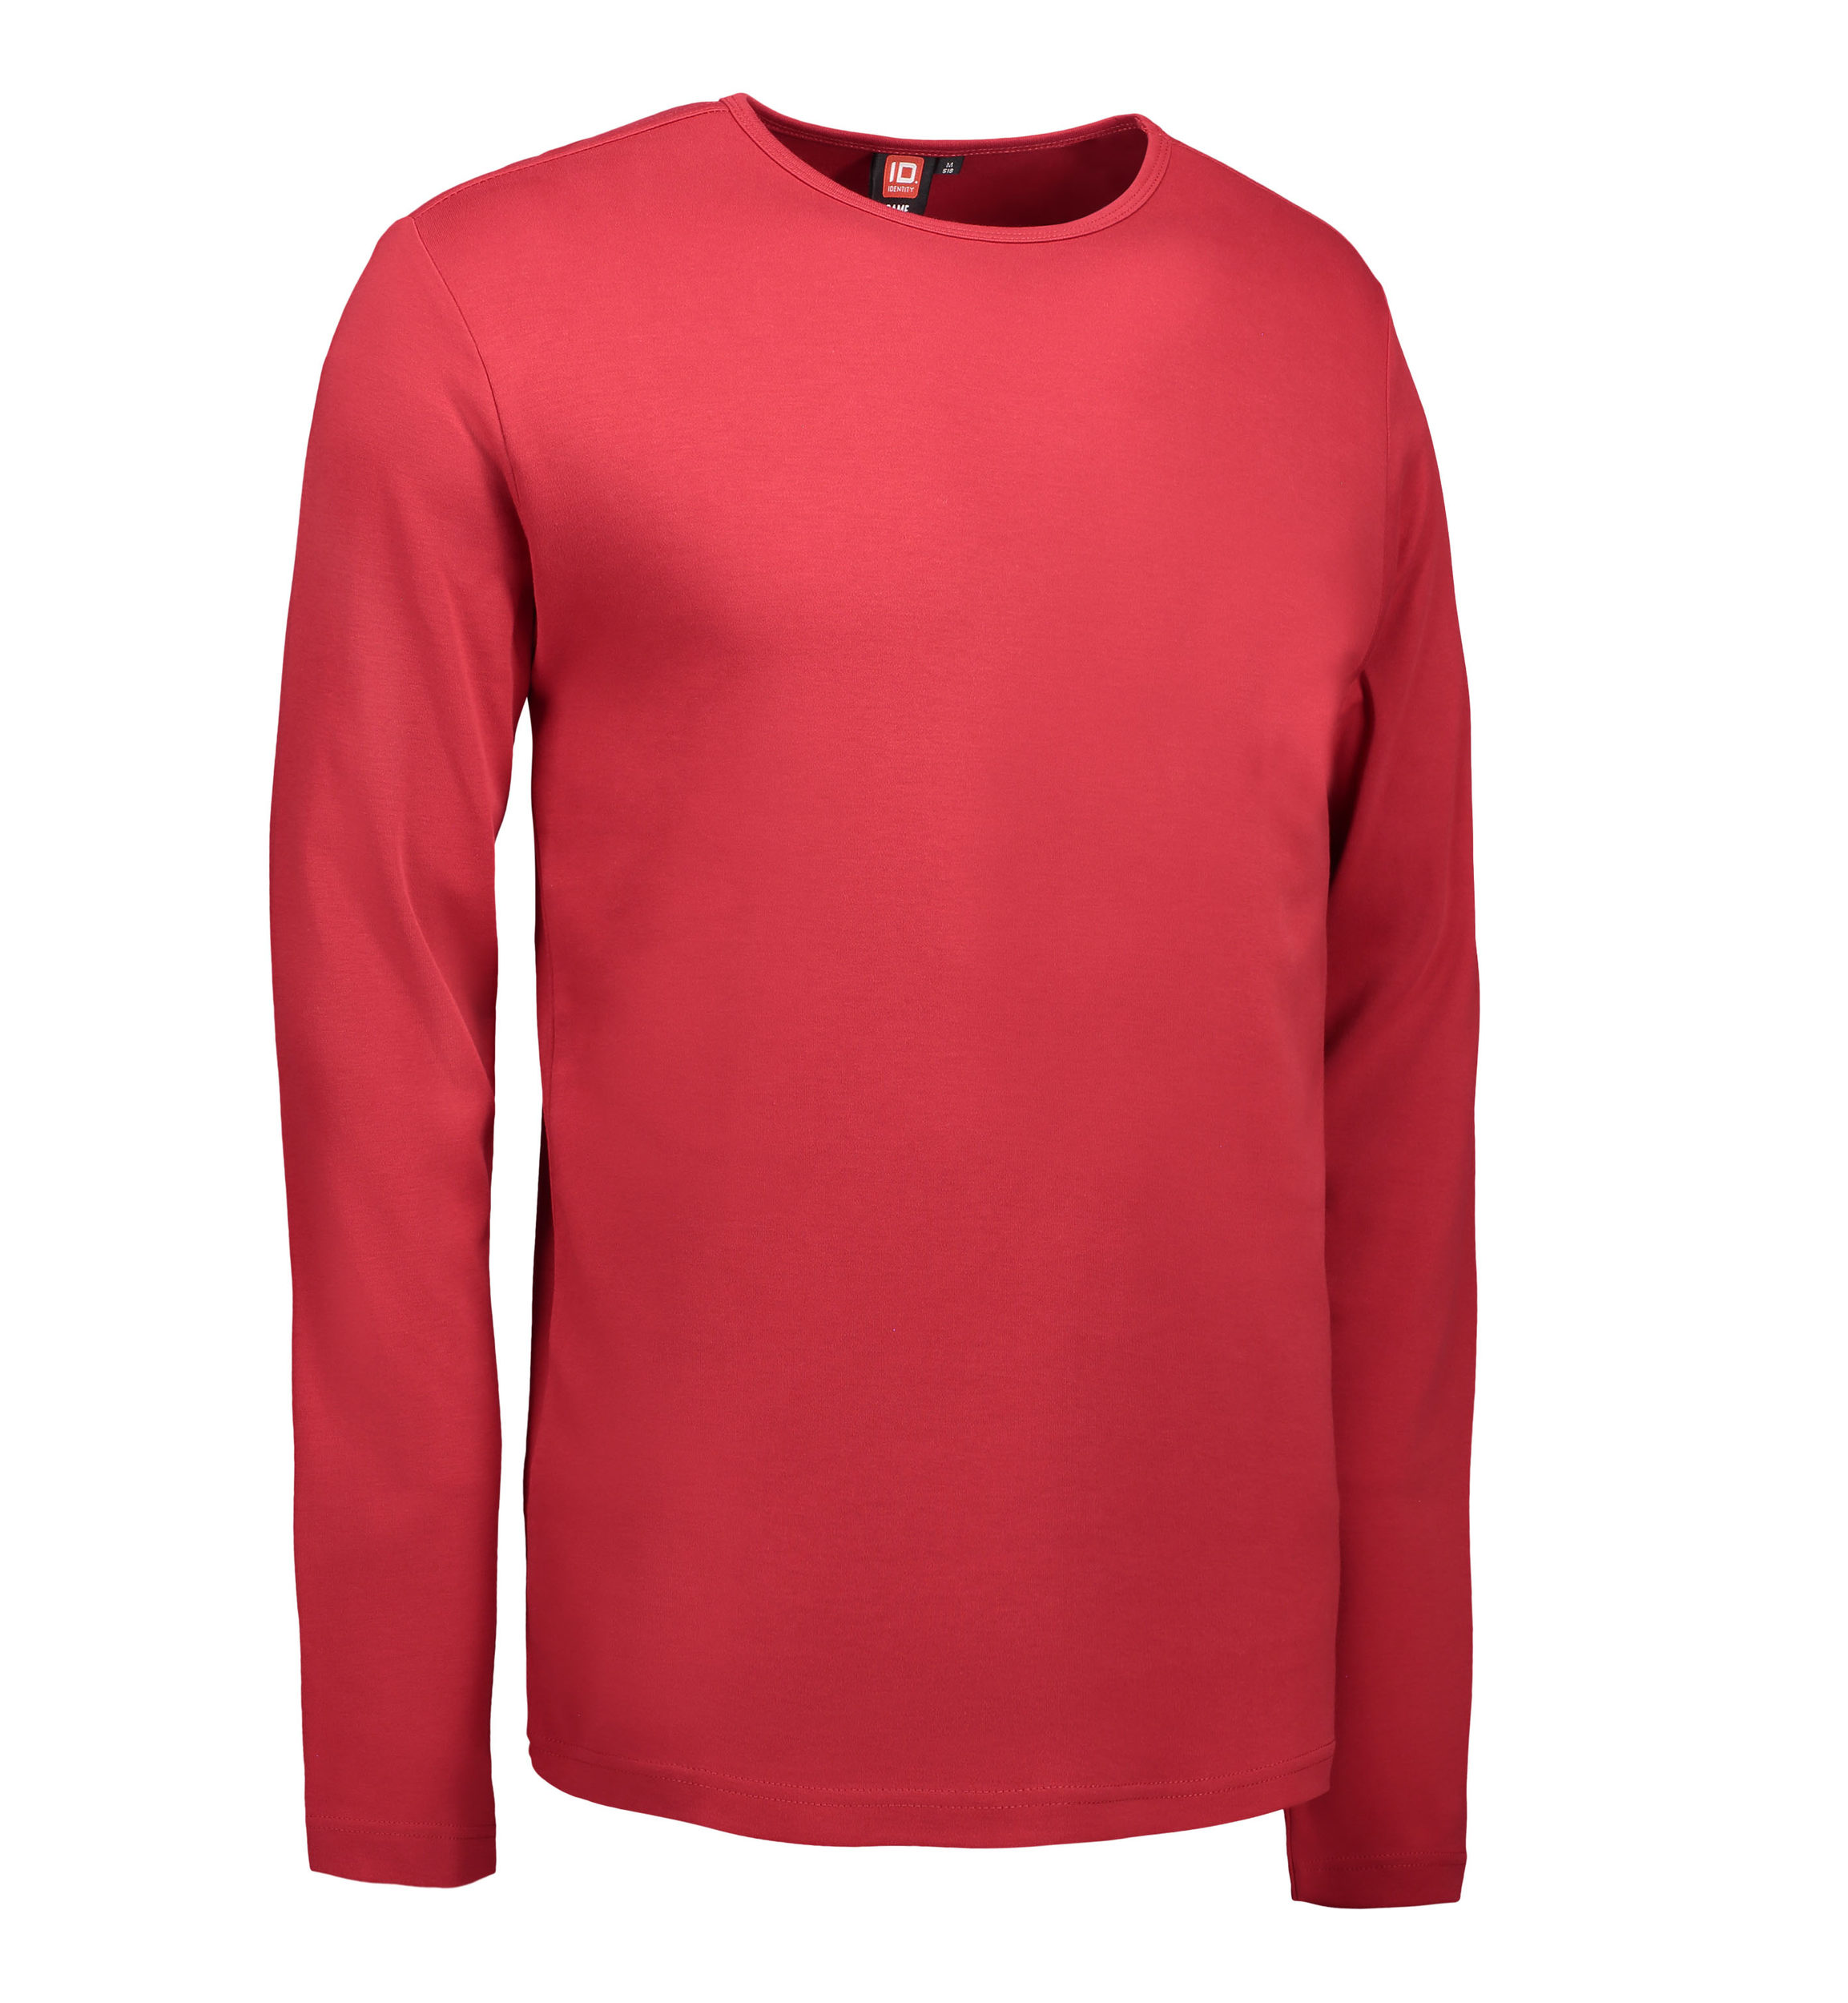 Billede af Rød langærmet t-shirt til mænd - S hos Sygeplejebutikken.dk